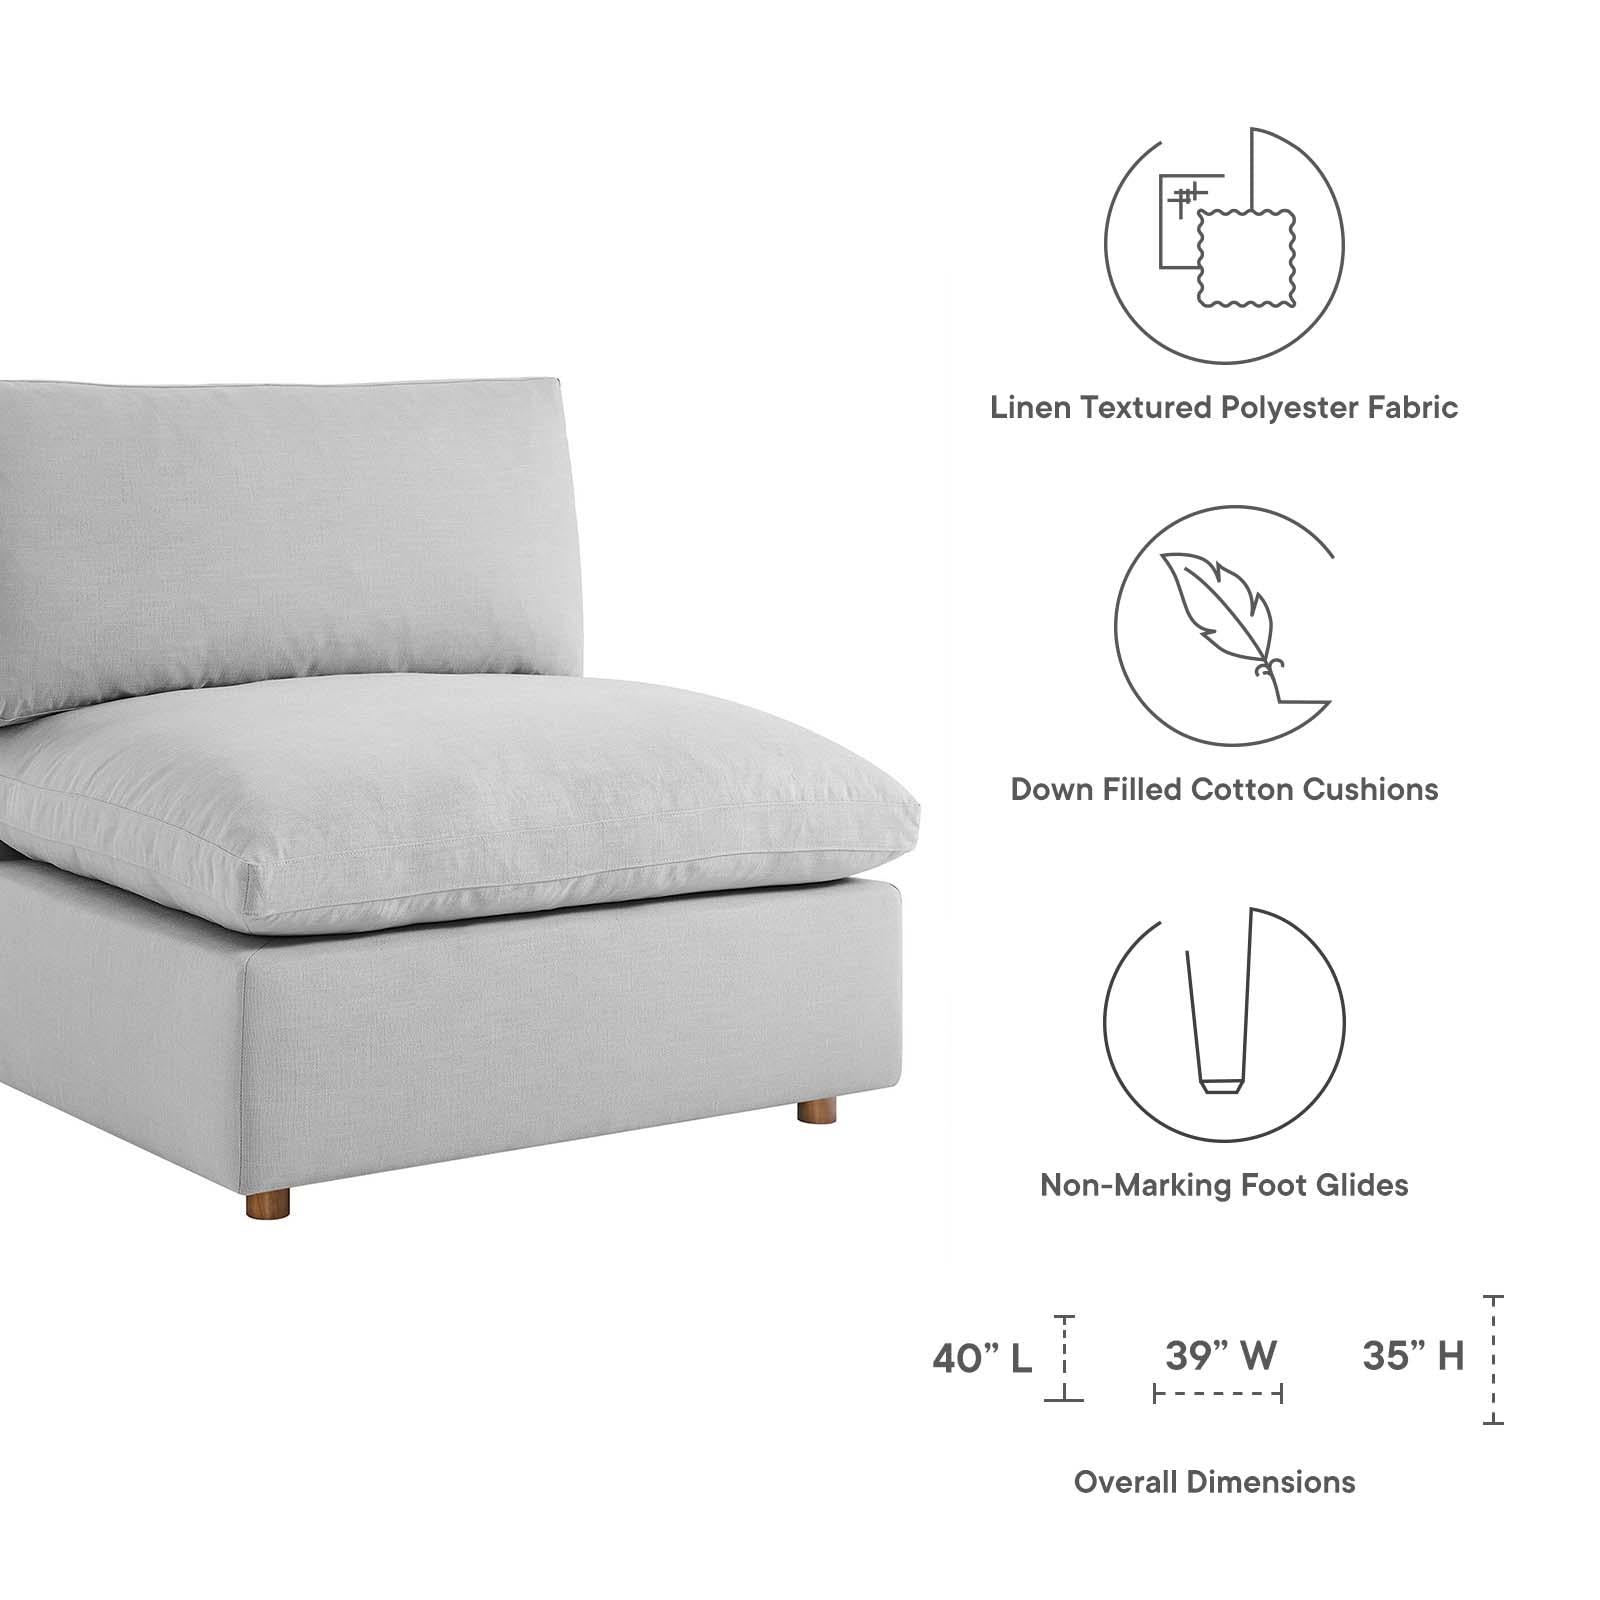 Modway Furniture Modern Commix Down Filled Overstuffed 5 Piece Sectional Sofa Set - EEI-3358